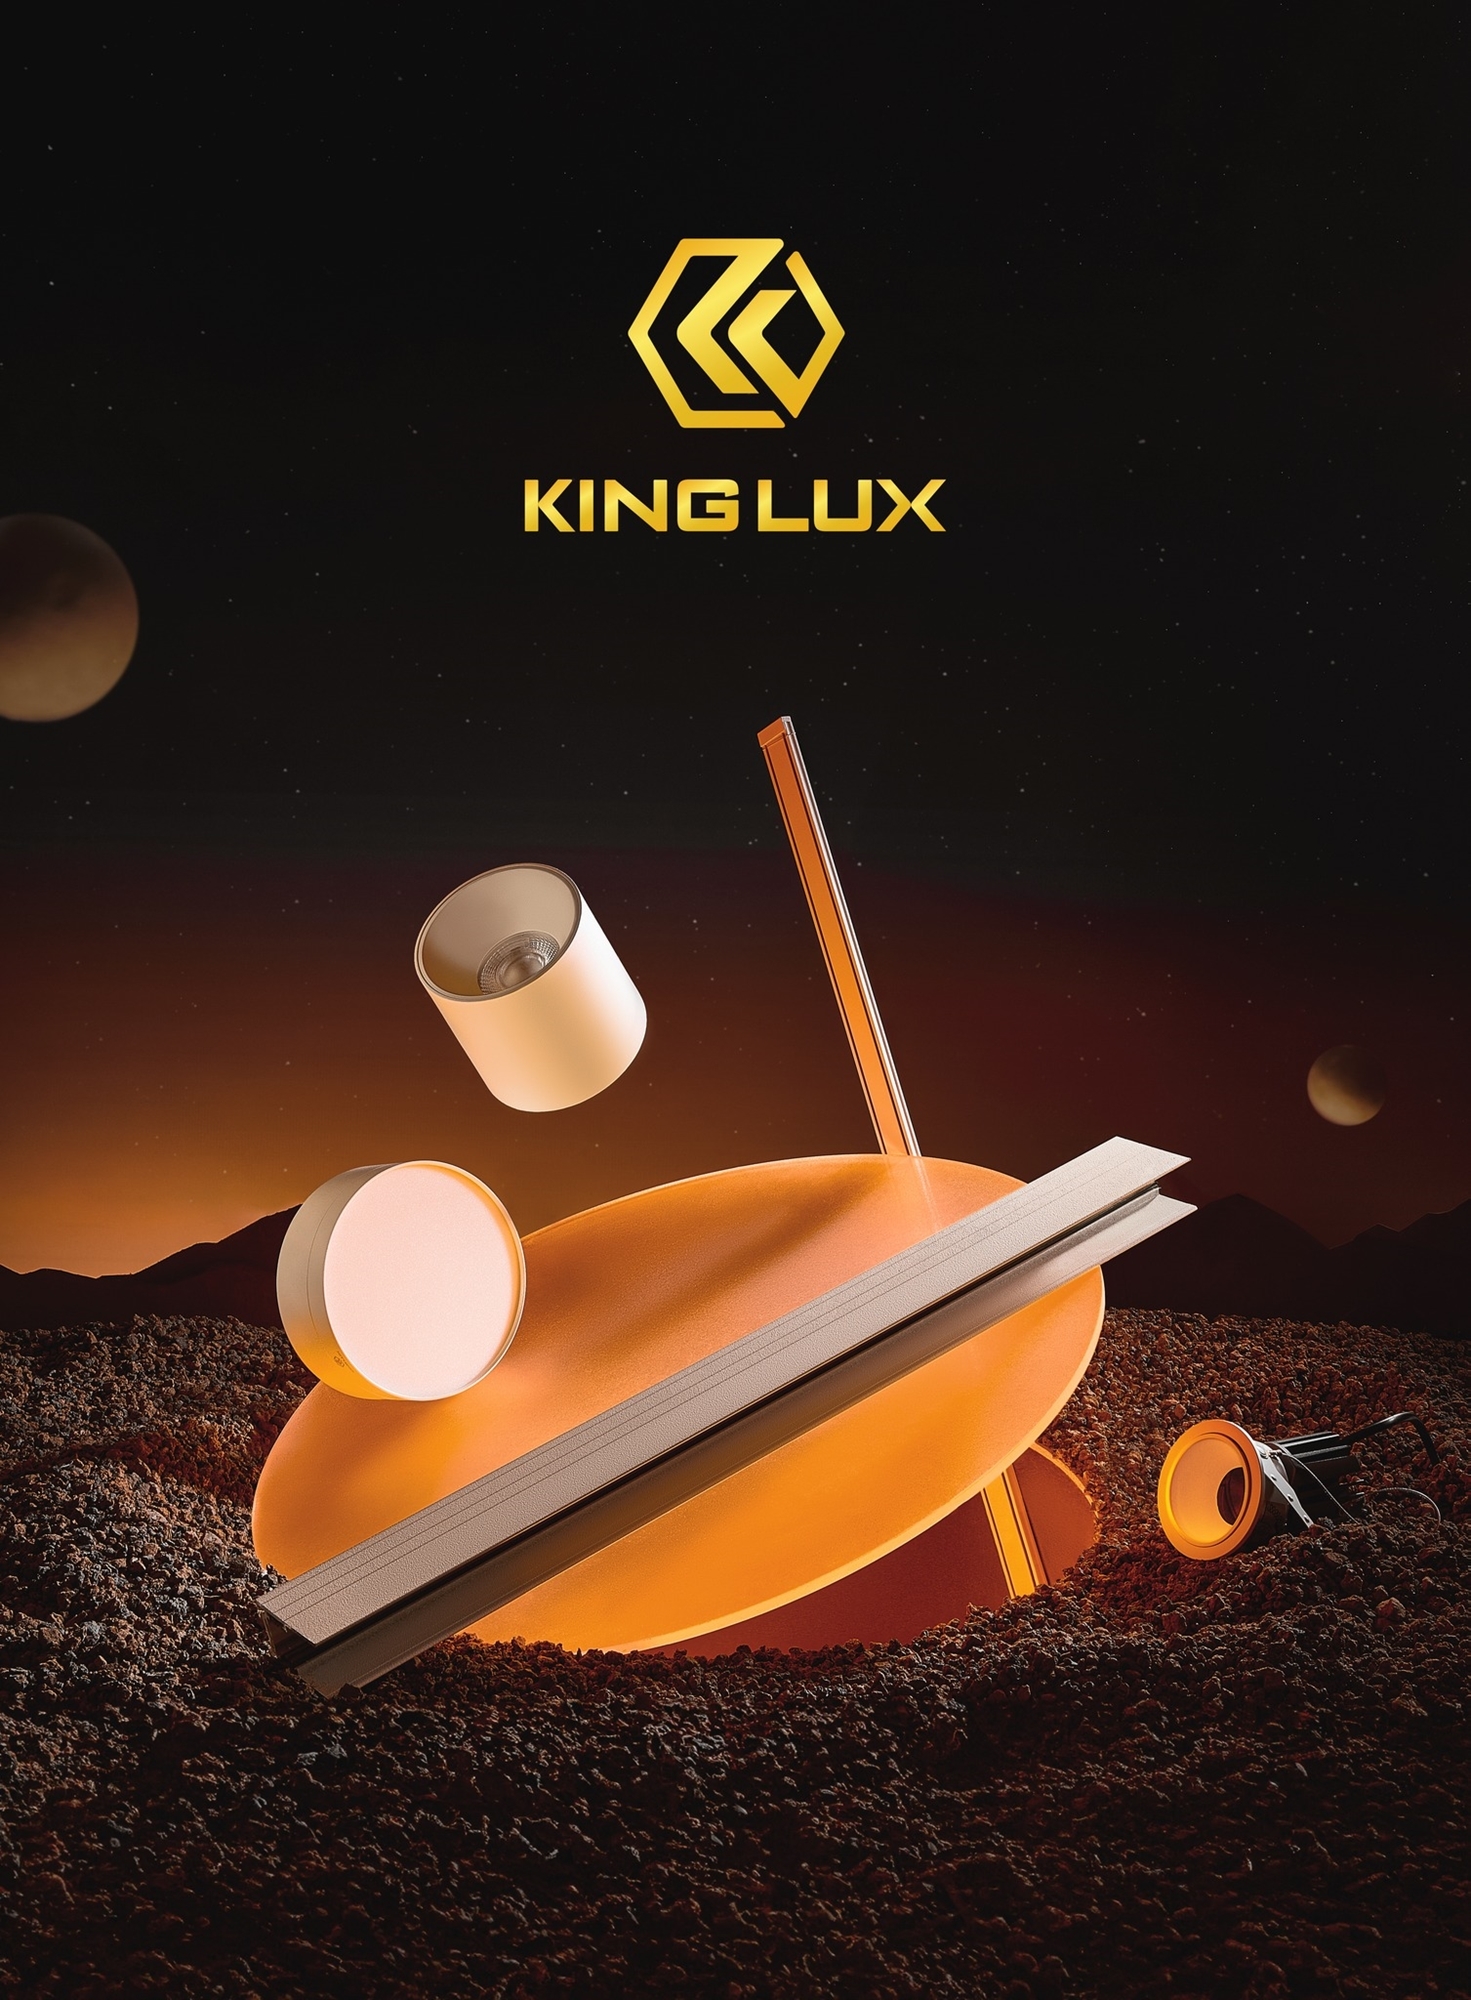 Lời chào đến từ thương hiệu Kinglux!